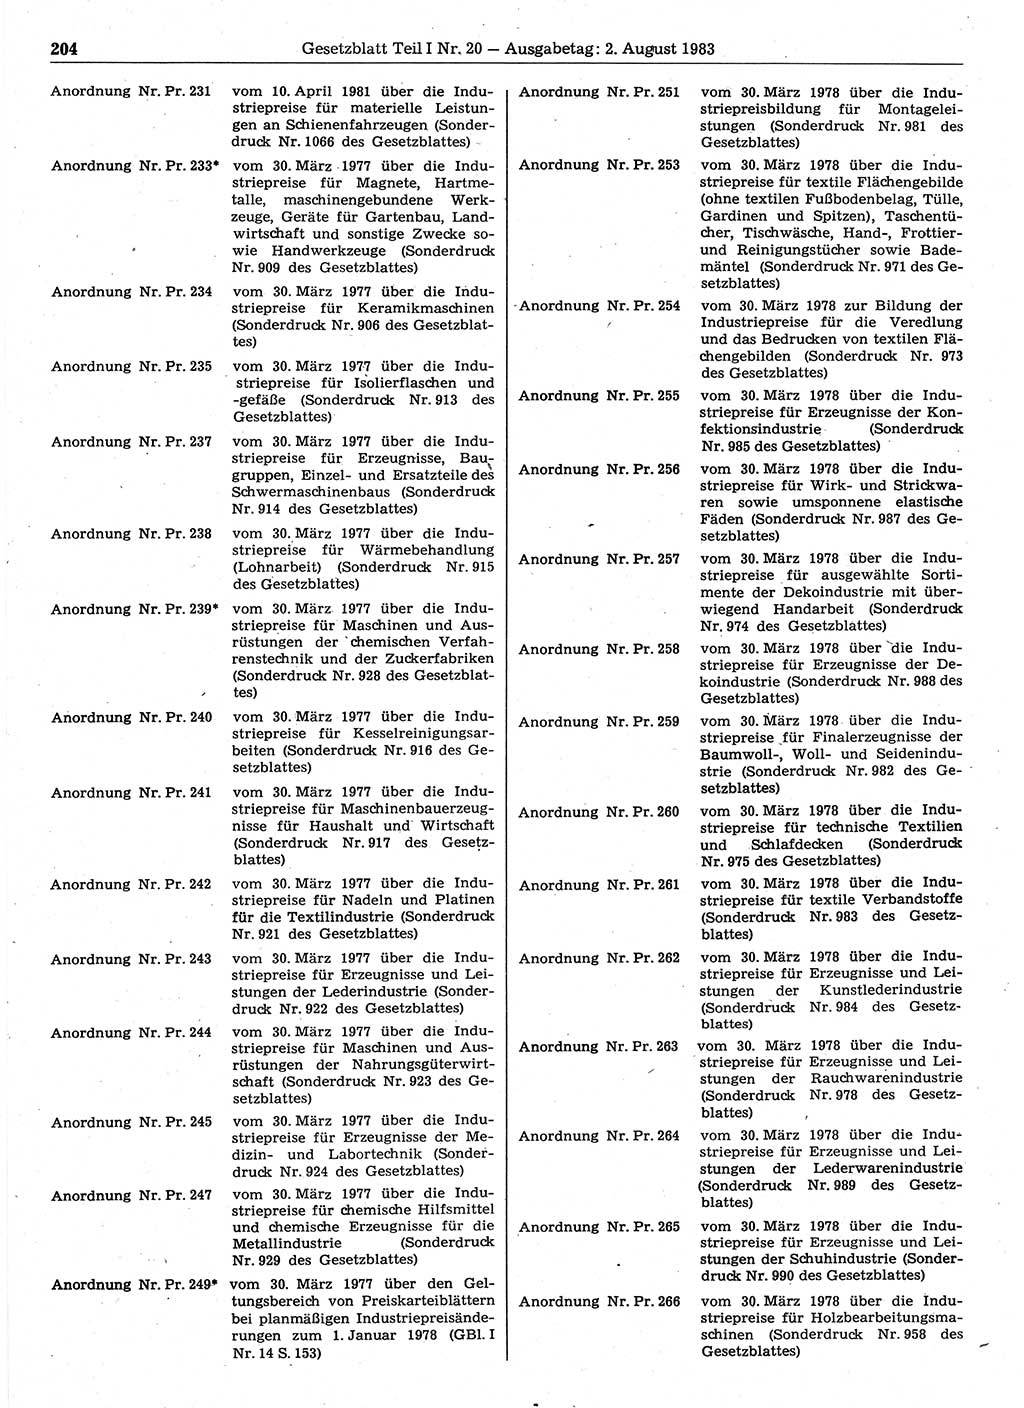 Gesetzblatt (GBl.) der Deutschen Demokratischen Republik (DDR) Teil Ⅰ 1983, Seite 204 (GBl. DDR Ⅰ 1983, S. 204)